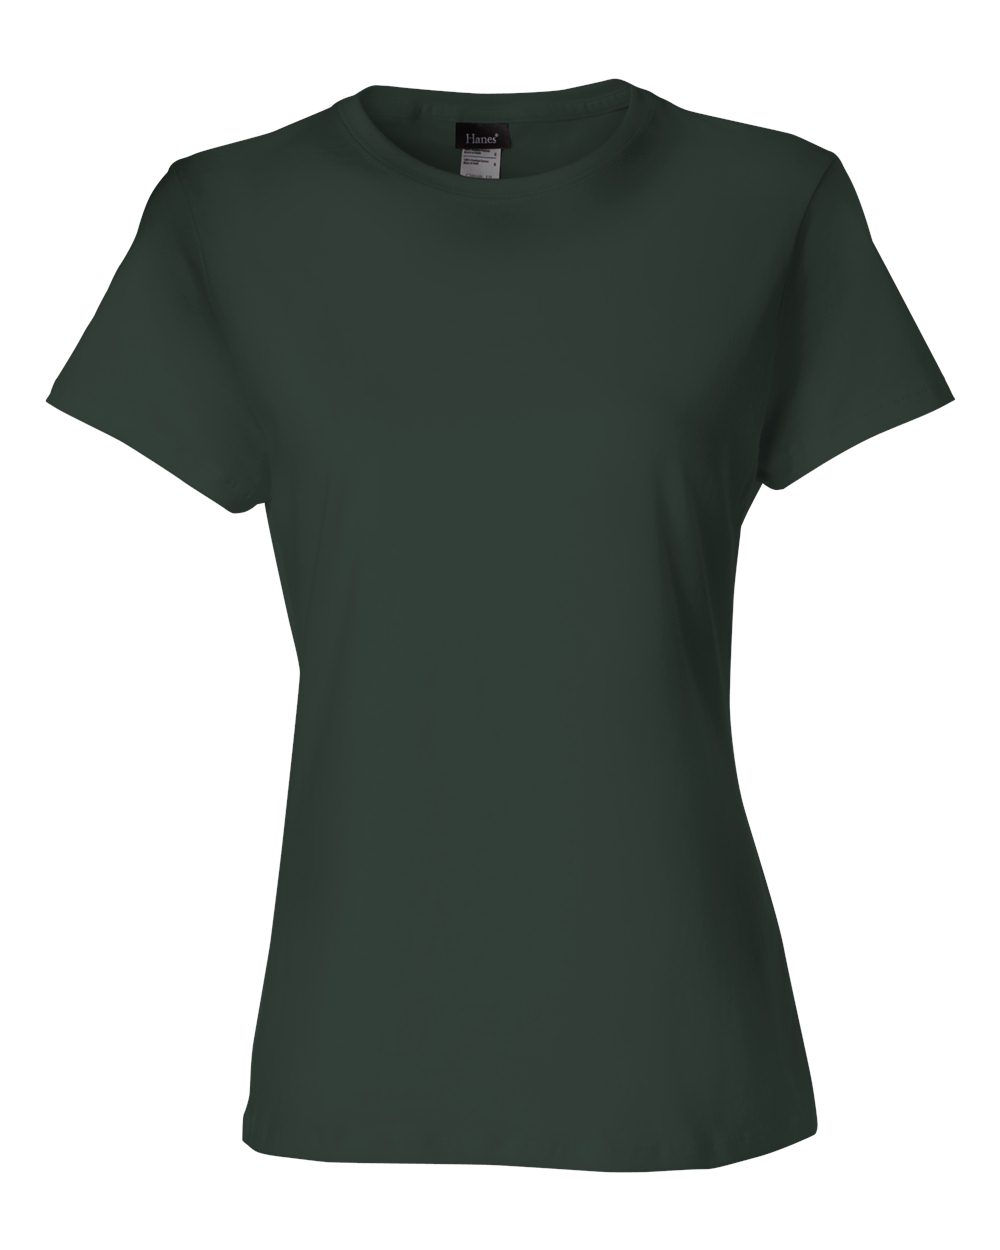 Hanes SL04 T-Shirt Ladies' 4.5 oz. Classic Fit Ringspun - Walmart.com